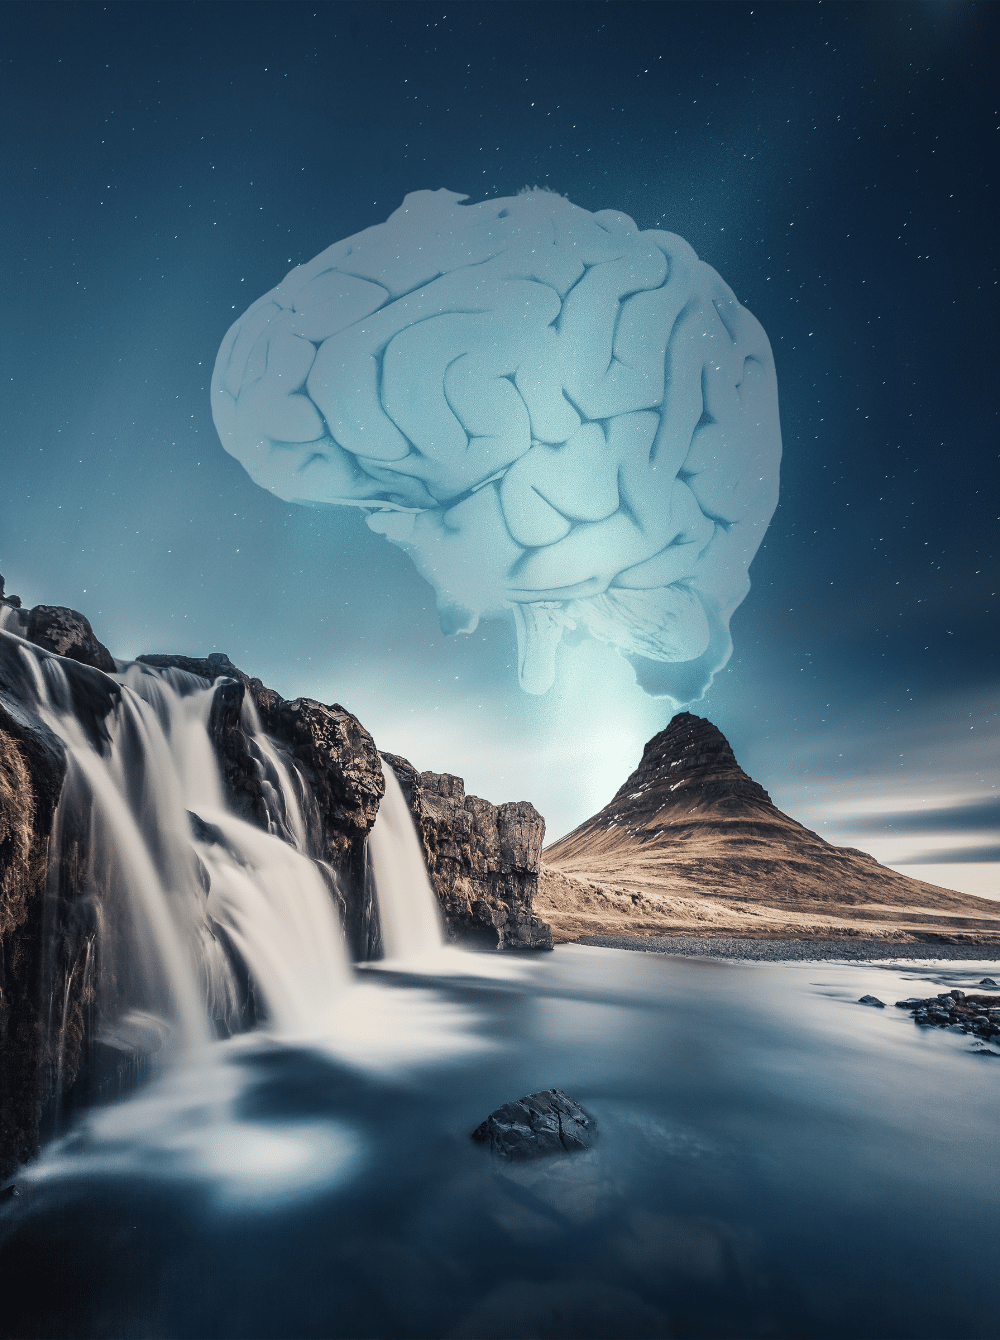 cascades d'eau sur rochers et volcan avec nuage de fumée en forme de cerveau